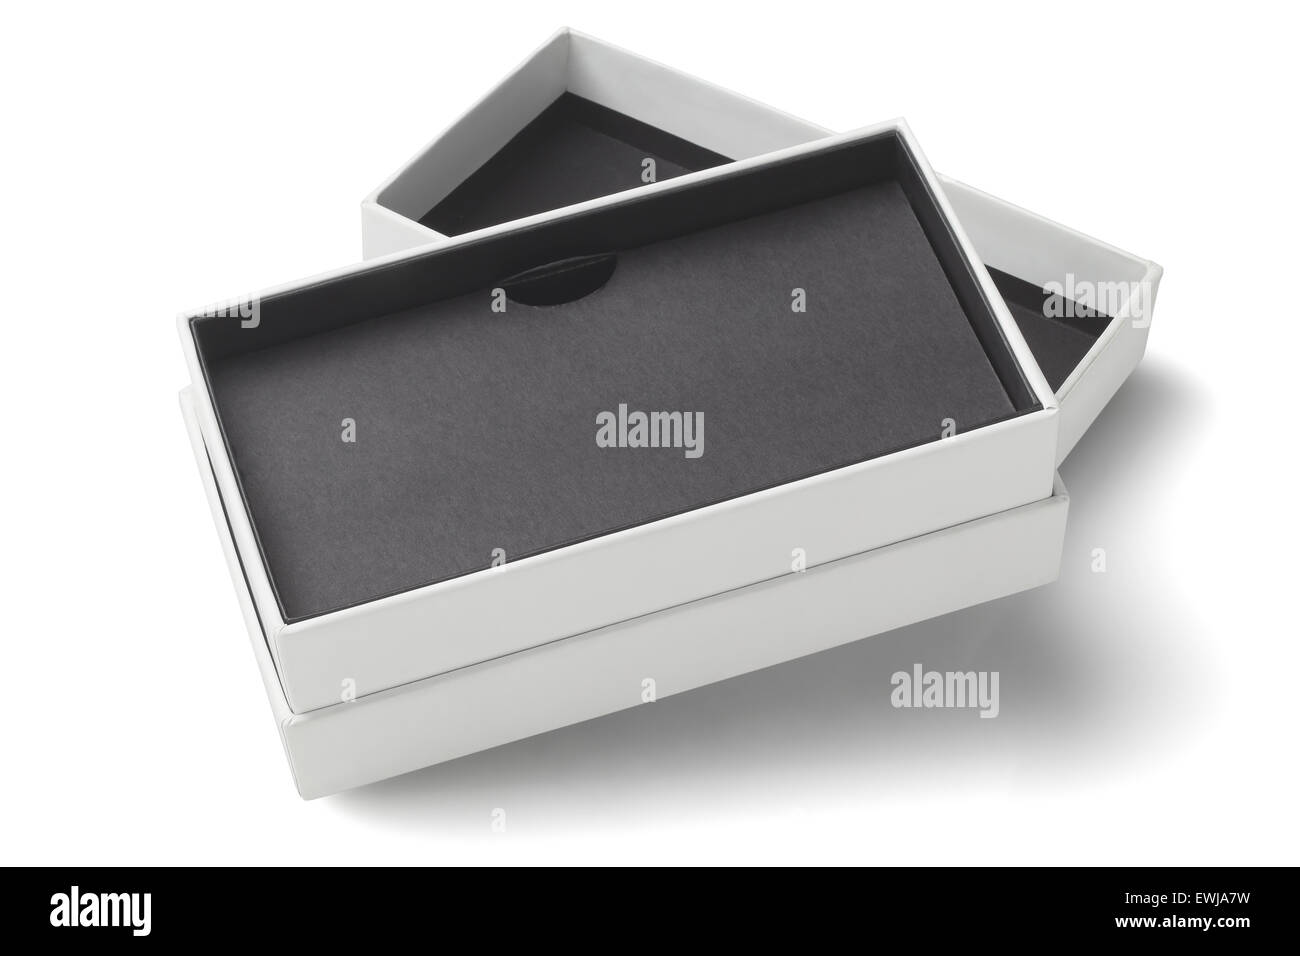 Offenes Smartphone Karton Verpackung Box auf weißem Hintergrund Stockfoto